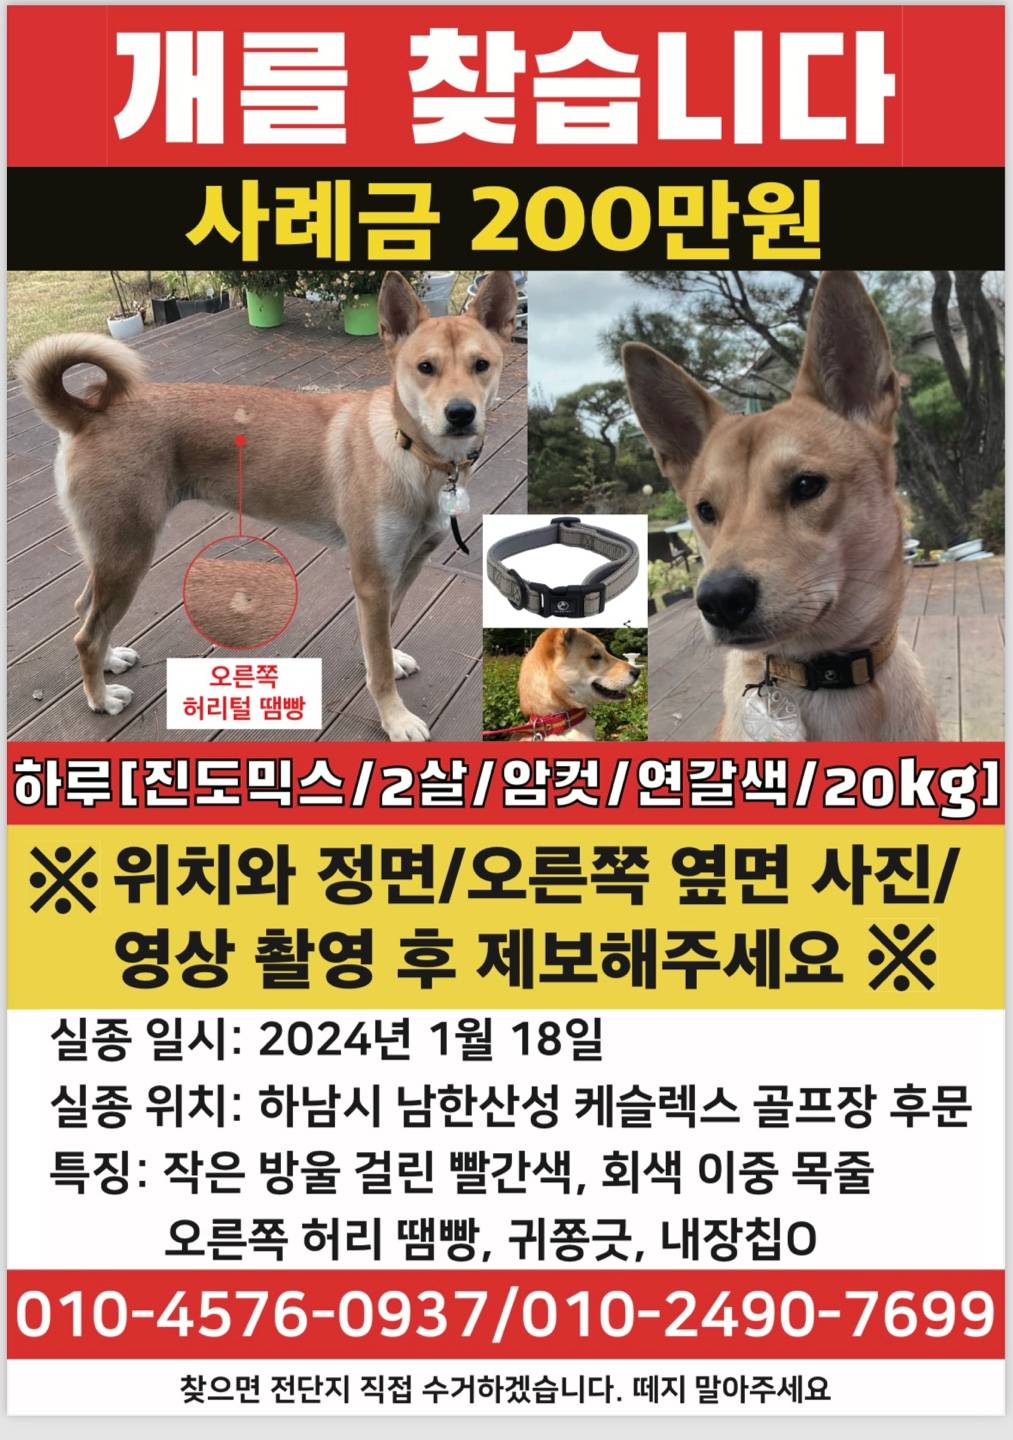 실종된 강아지를 찾습니다. (경기도 하남시 남한산성 부근 실종, 현재 유력장소 : 경기도 하남, 서울 마천동, 위례) | 인스티즈